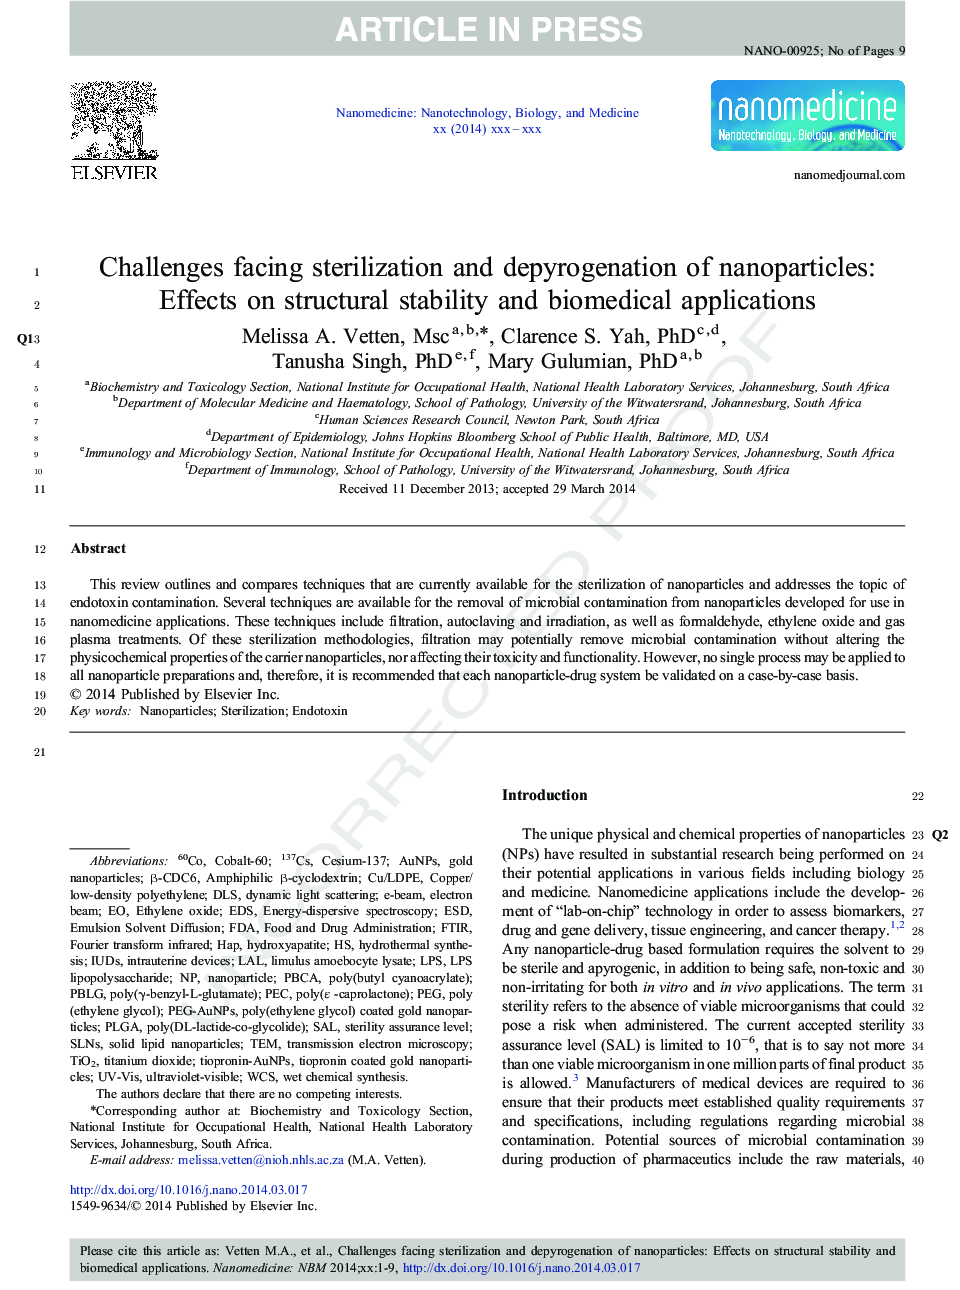 چالش های استریلیزاسیون و پپایروگرافی نانوذرات: اثرات بر پایداری ساختاری و کاربردهای بیومدیکال 